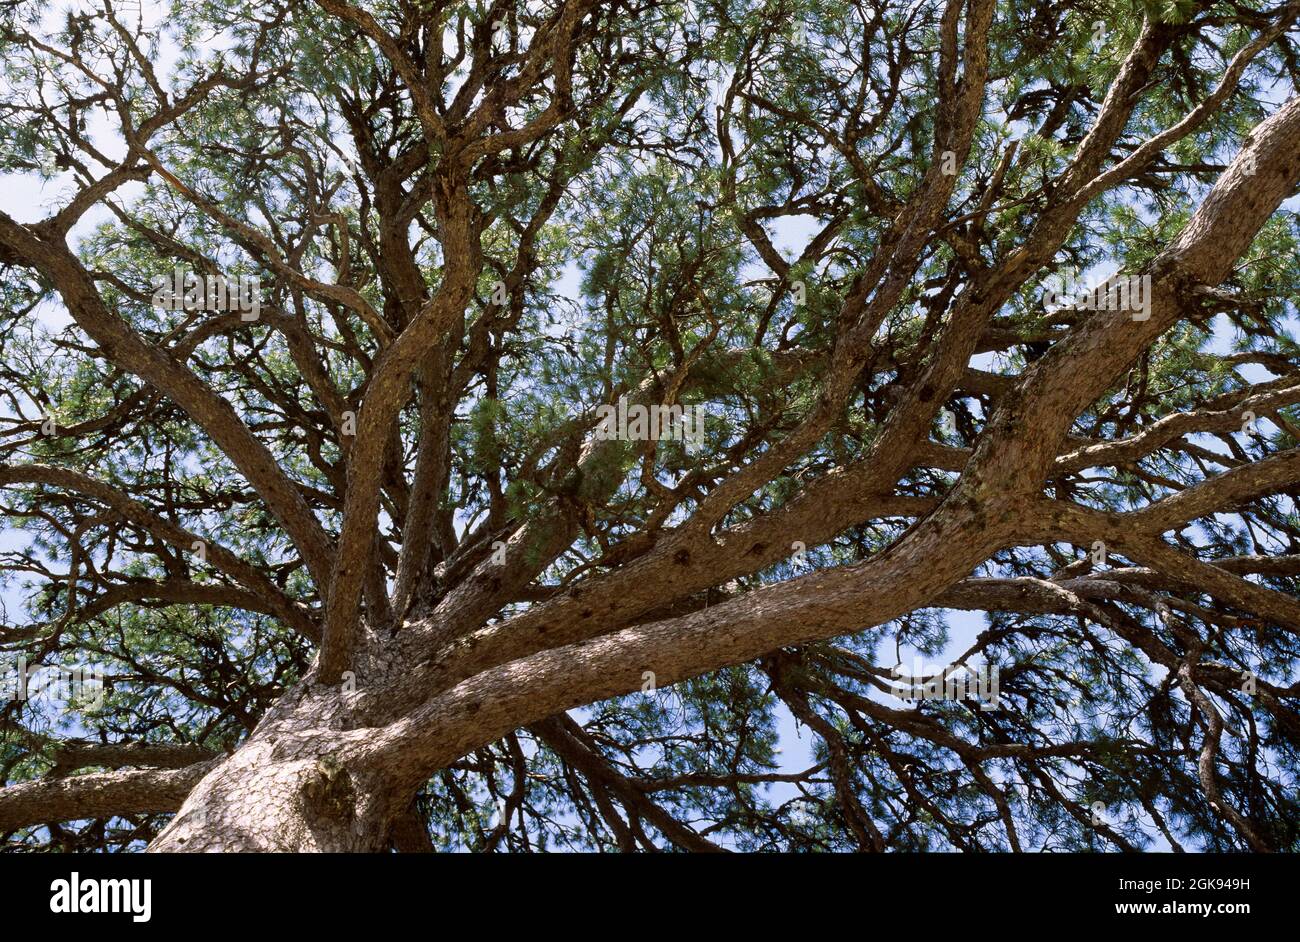 PIN noir européen, PIN autrichien, PIN noir, PIN Corse (Pinus nigra), vue sur un sommet d'arbre Banque D'Images